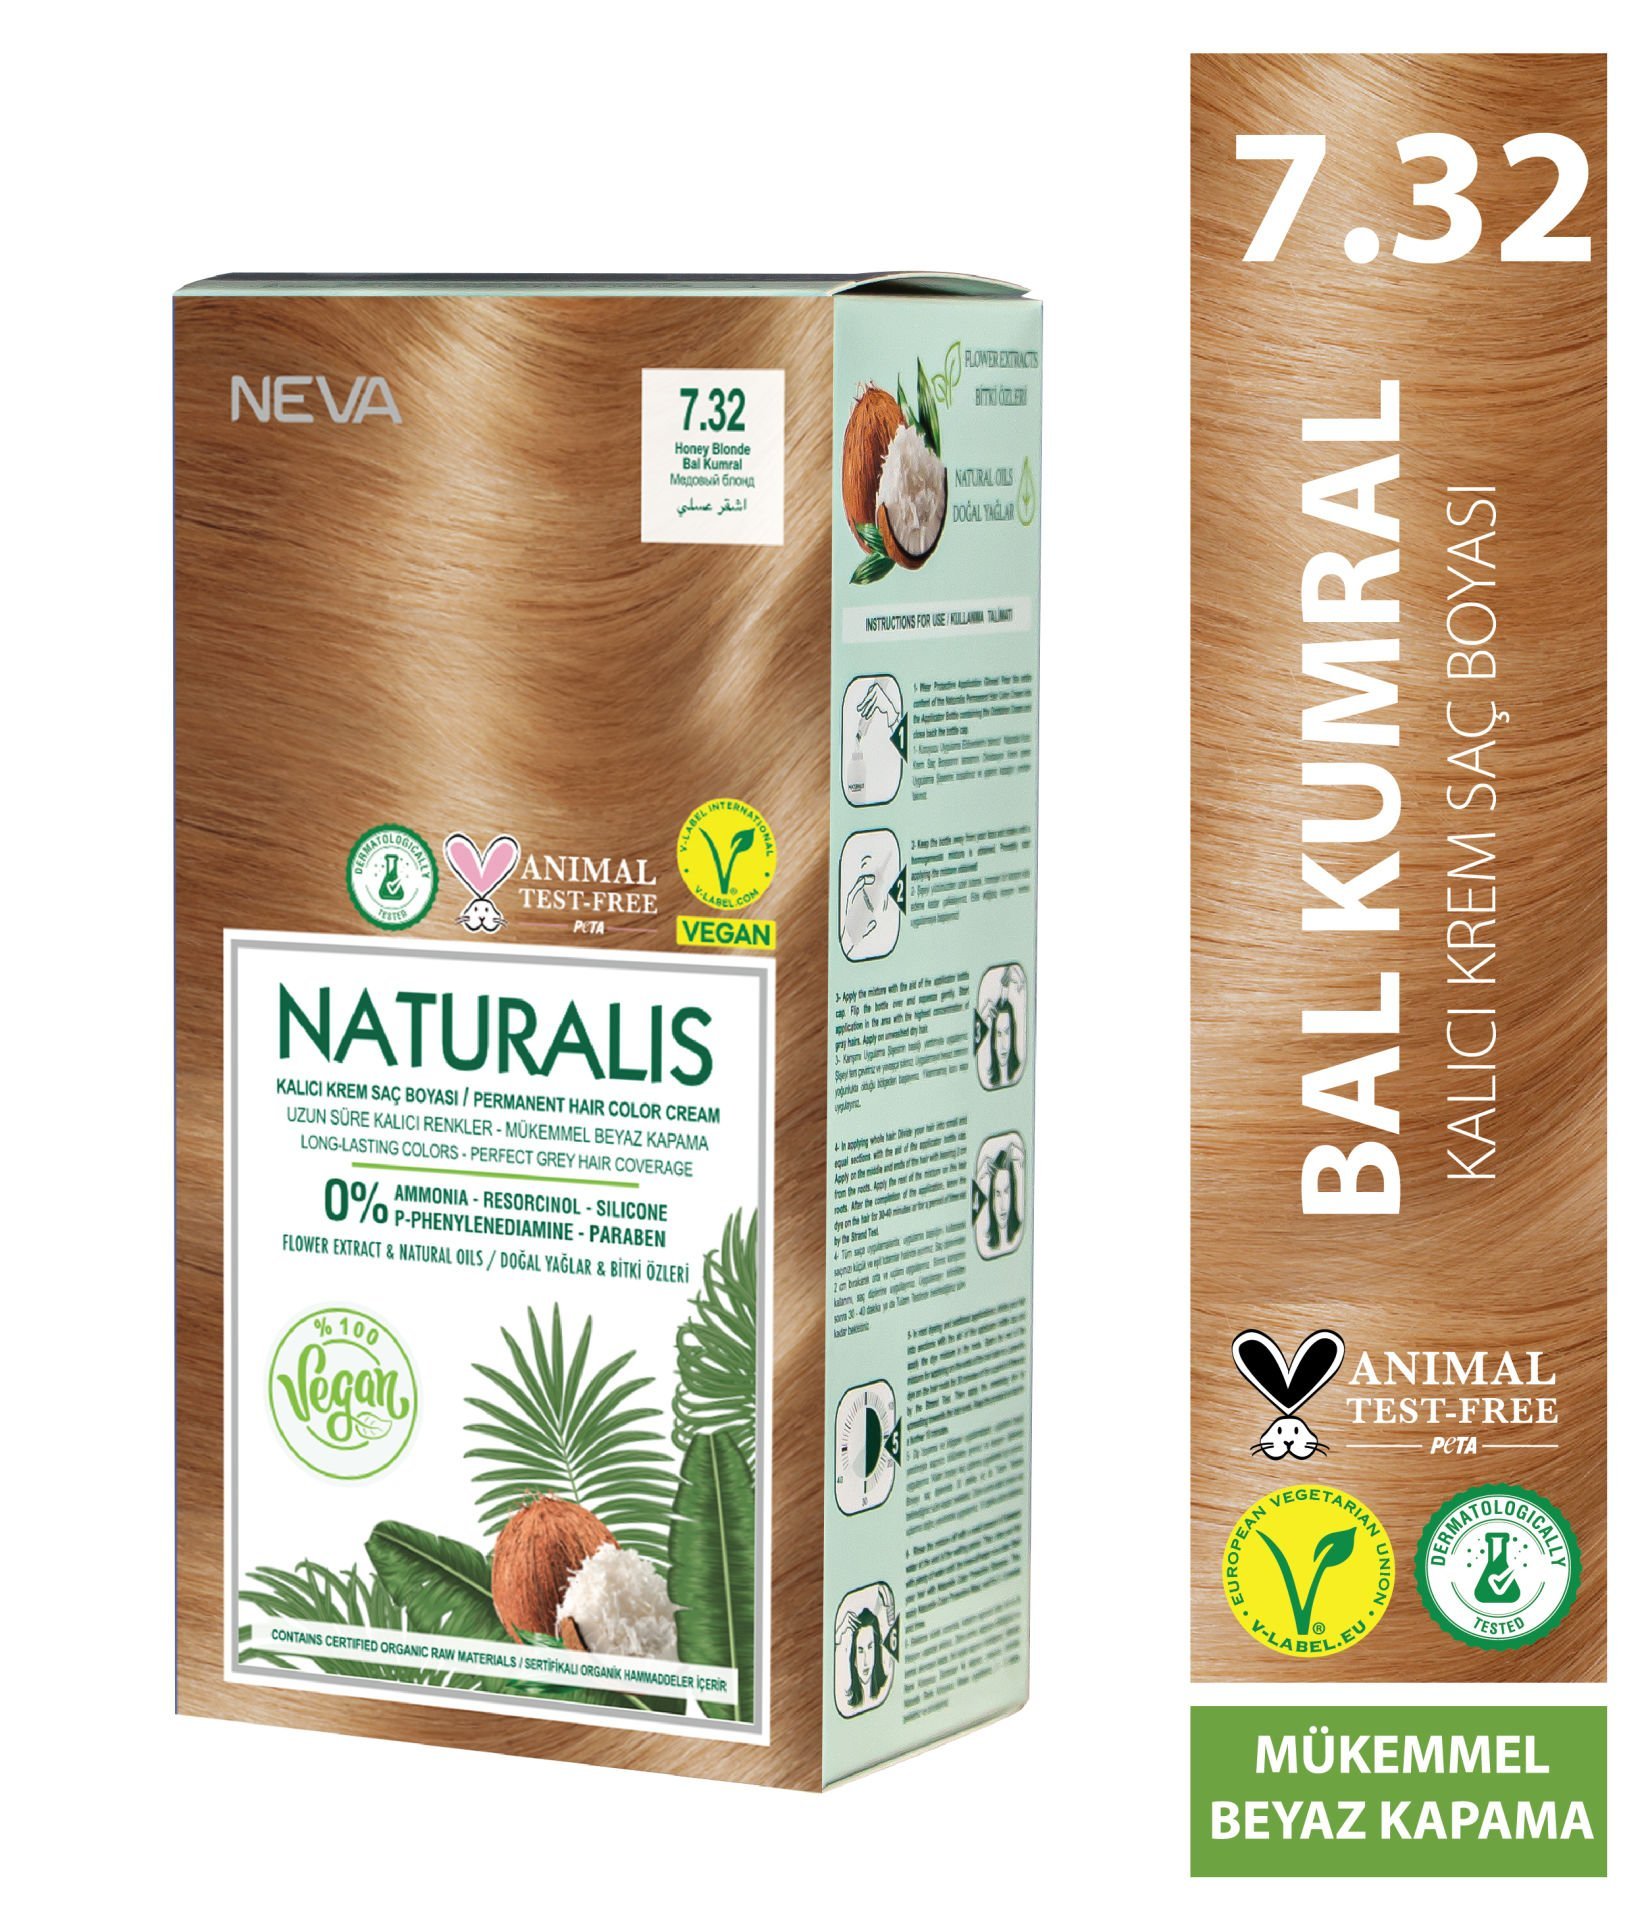 Nevacolor Naturalis Vegan Bal Kumral 7.32 Kalıcı Krem Saç Boyası Seti